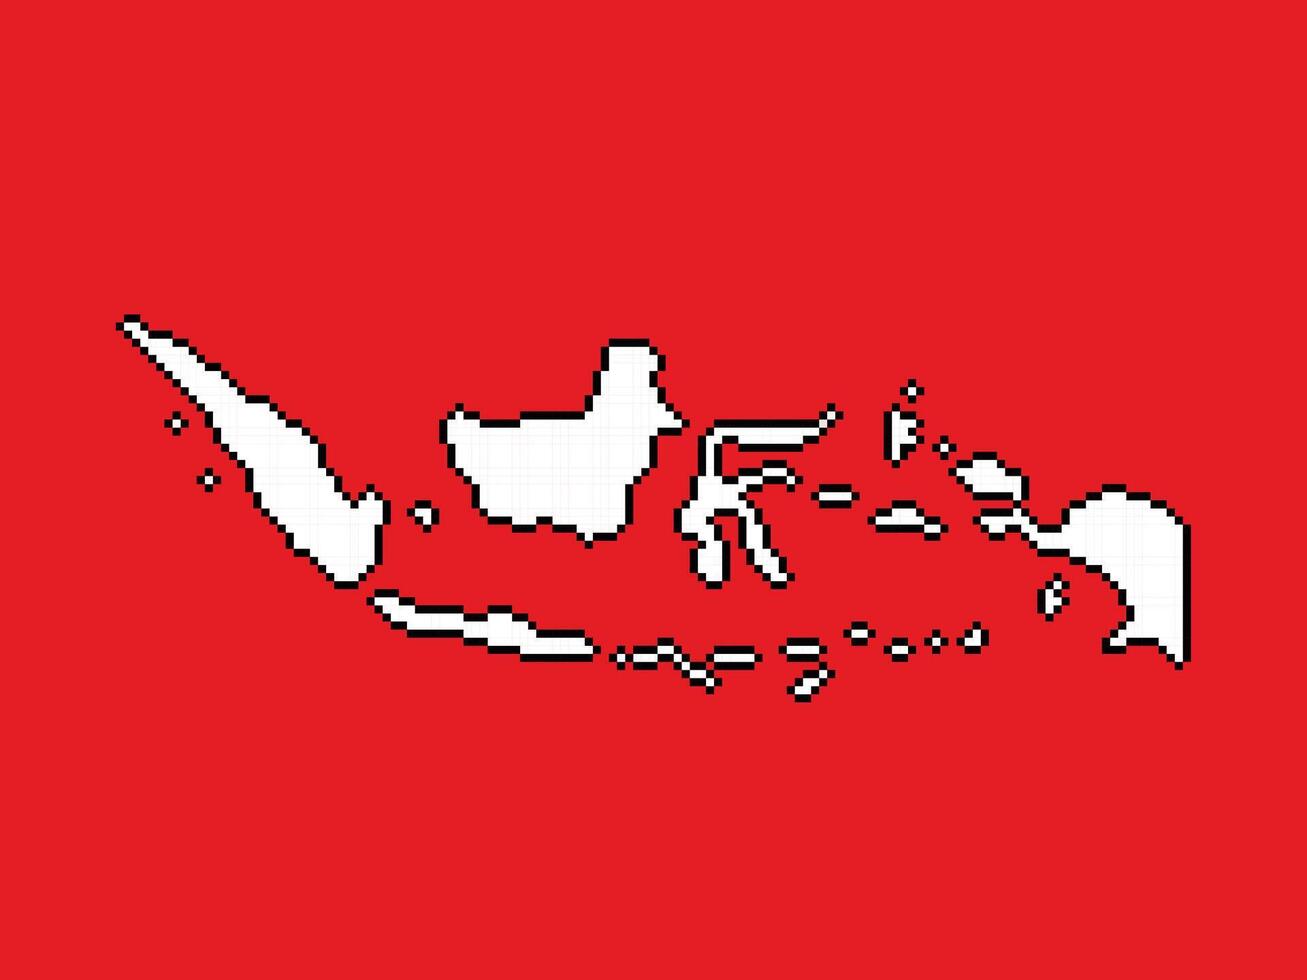 indonesien ö Land röd och vit färgad Karta. pixel bit retro spel styled vektor illustration teckning isolerat på horisontell förhållande bakgrund.